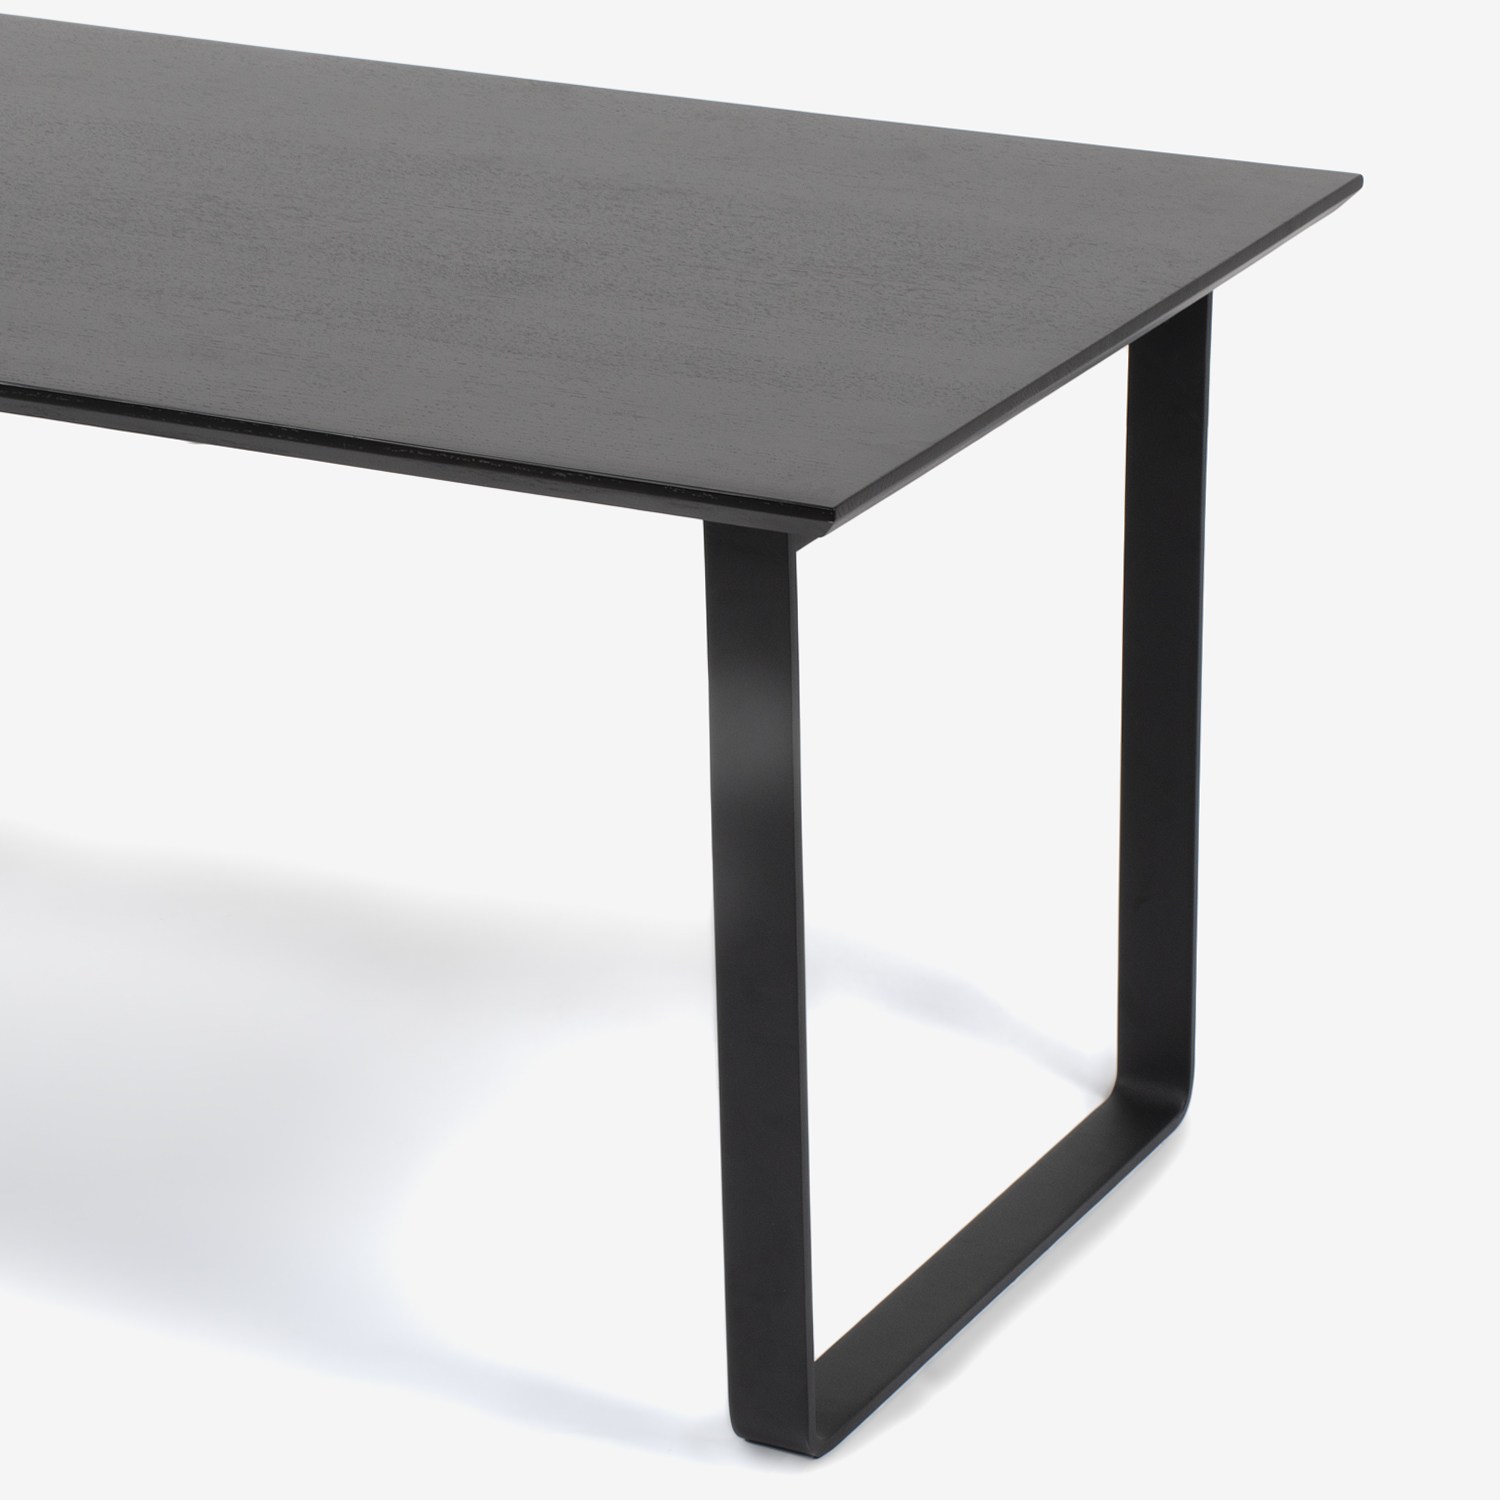 ダイニングテーブル「フィル3」天板角型 金属脚シルバー色 レッドオーク材 ダークブラウン色 全4サイズ